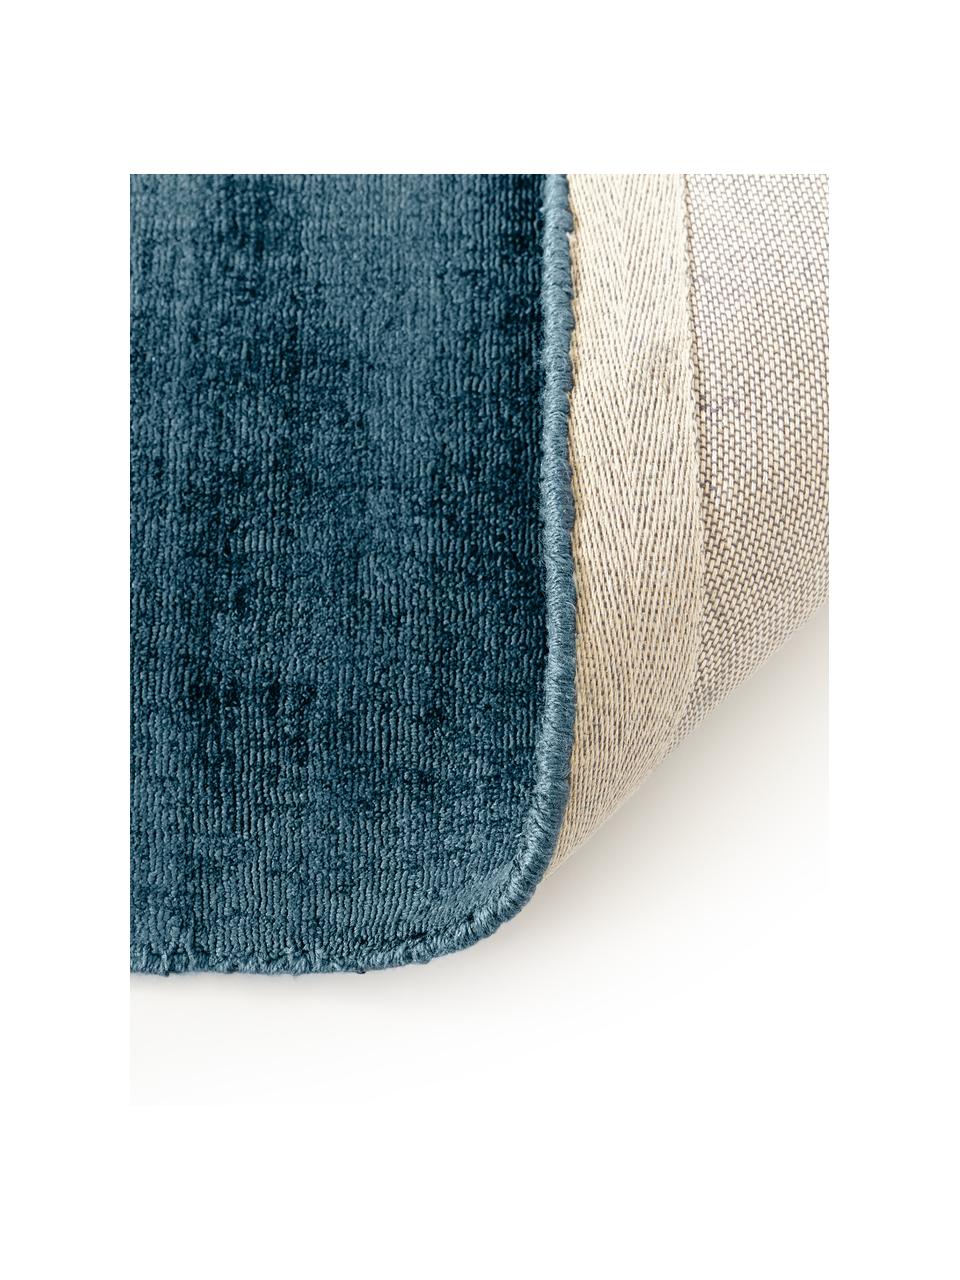 Ručně tkaný viskózový běhoun Jane, Tmavě modrá, Š 80 cm, D 200 cm